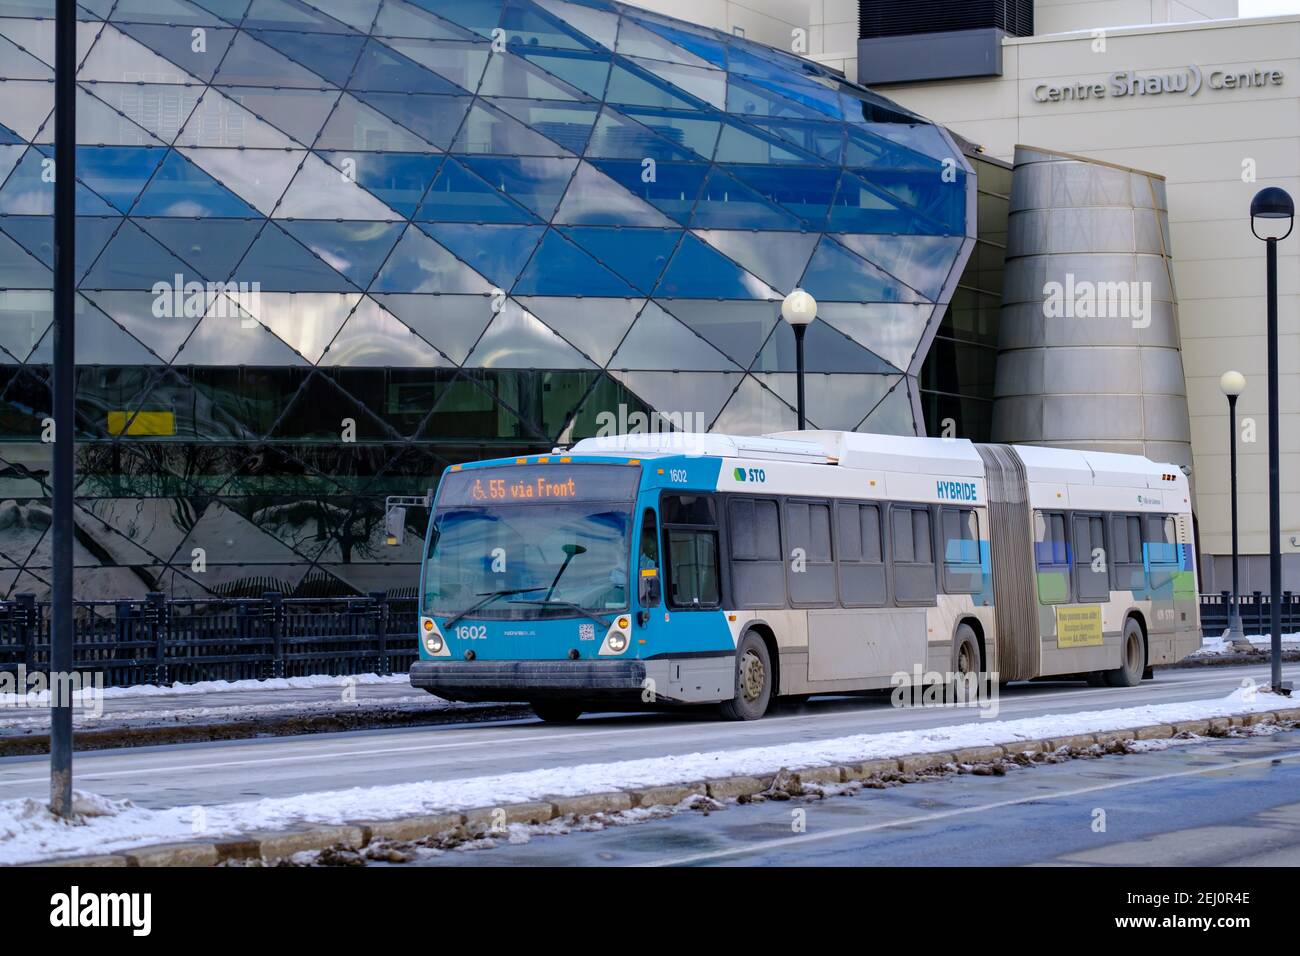 Ottawa, Ontario, Canada - 6 febbraio 2021: Un autobus urbano gestito dalla Société de transport de l'Outaouais (sto) servizio di transito in Quebec attraversa il Foto Stock